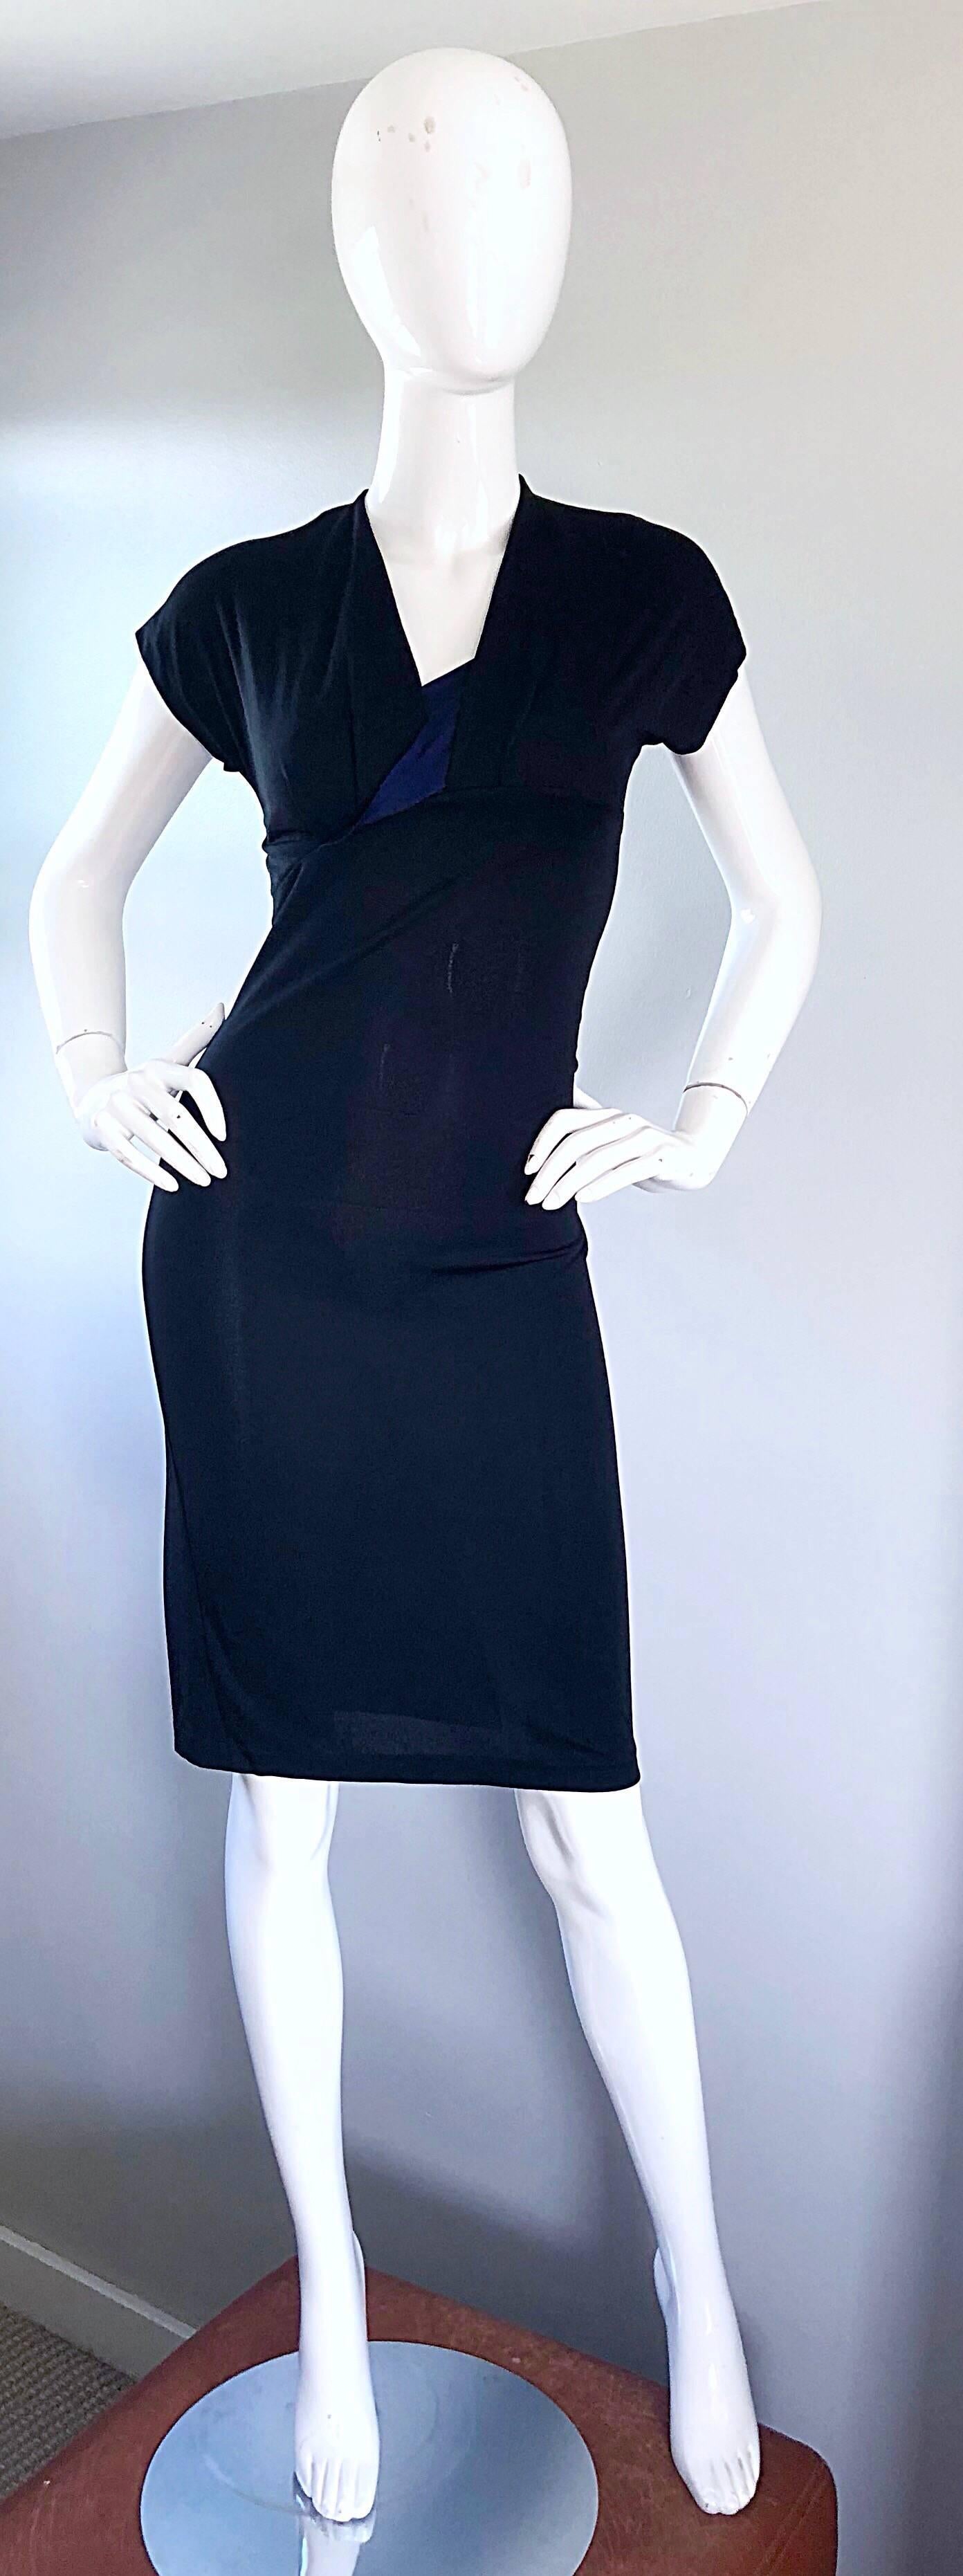 Das perfekte kleine schwarze Kleid! Dieses schwarz-marineblaue Jerseykleid von SALVATORE FERRAGOMO aus den 1990er Jahren ist ein echter Renner! Weiches Viskose-Jersey-Gewebe, das sich dehnt und anpasst. Marineblaues Seidendetail in der Mitte der